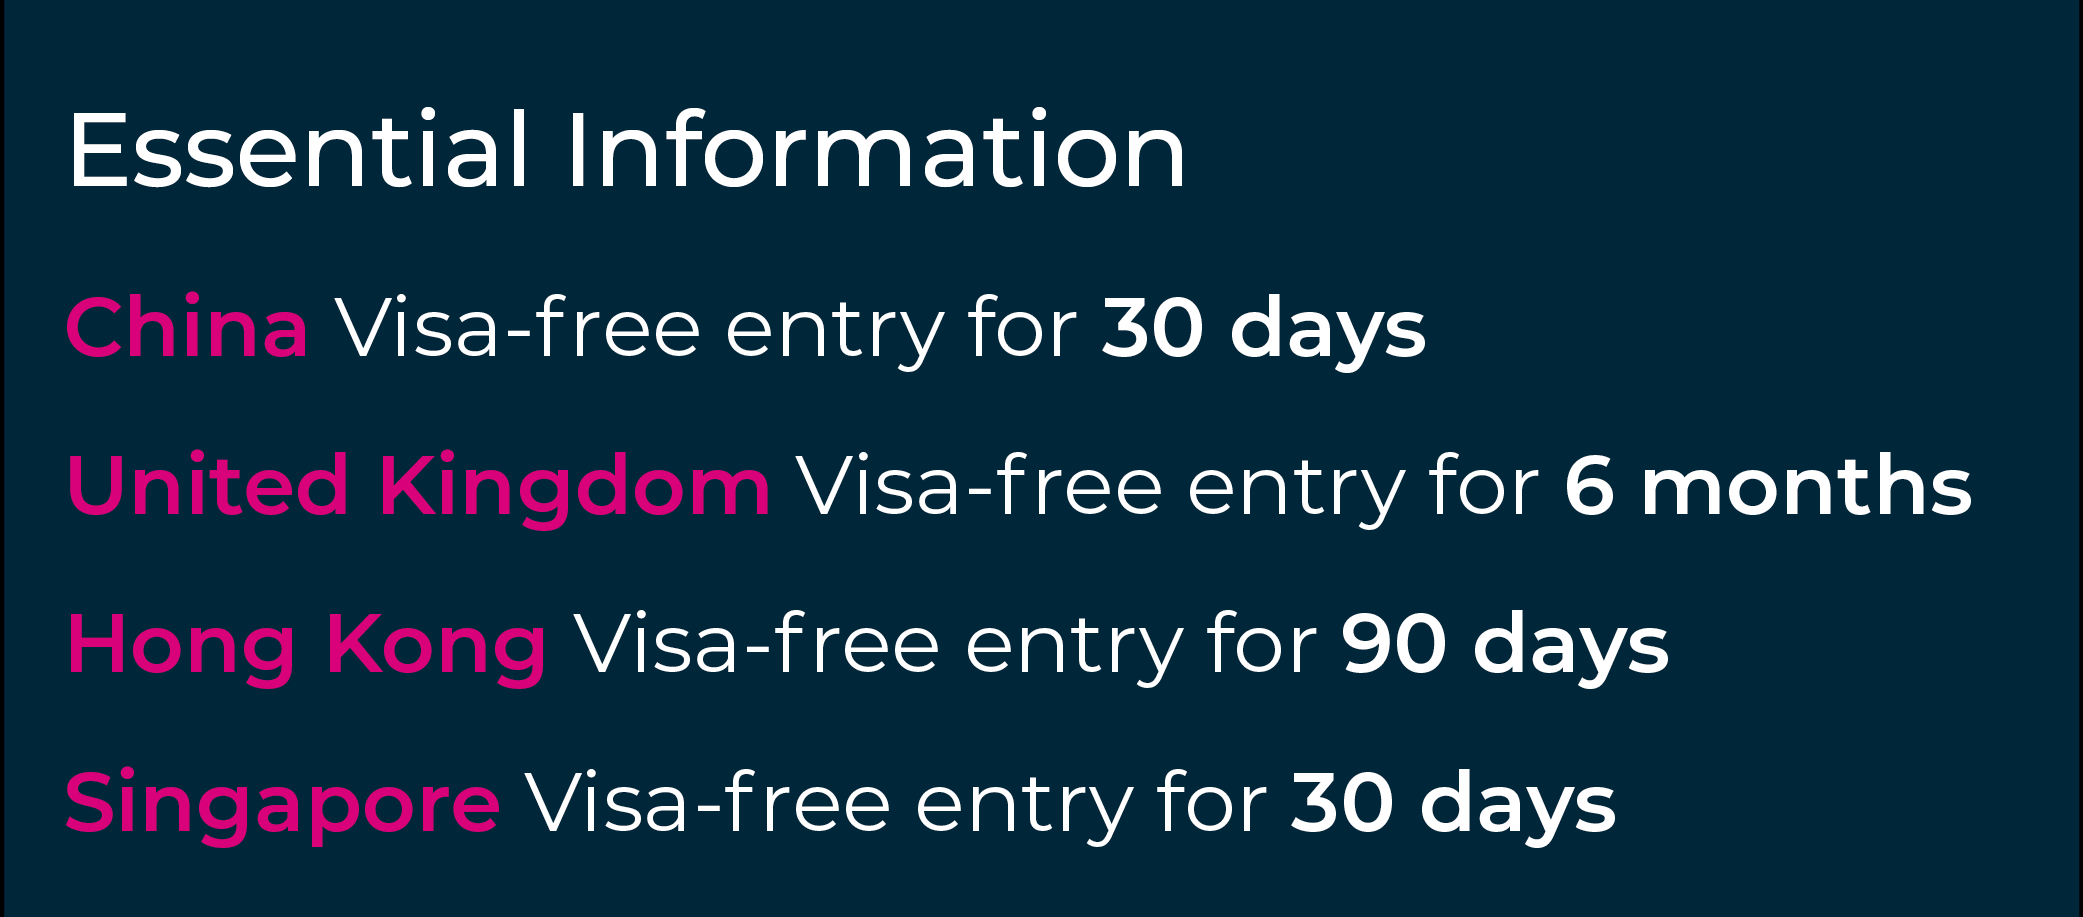 شهروندی گرانادا ارائه می دهد ورود بدون ویزا به چین، سنگاپور و انگلستان.